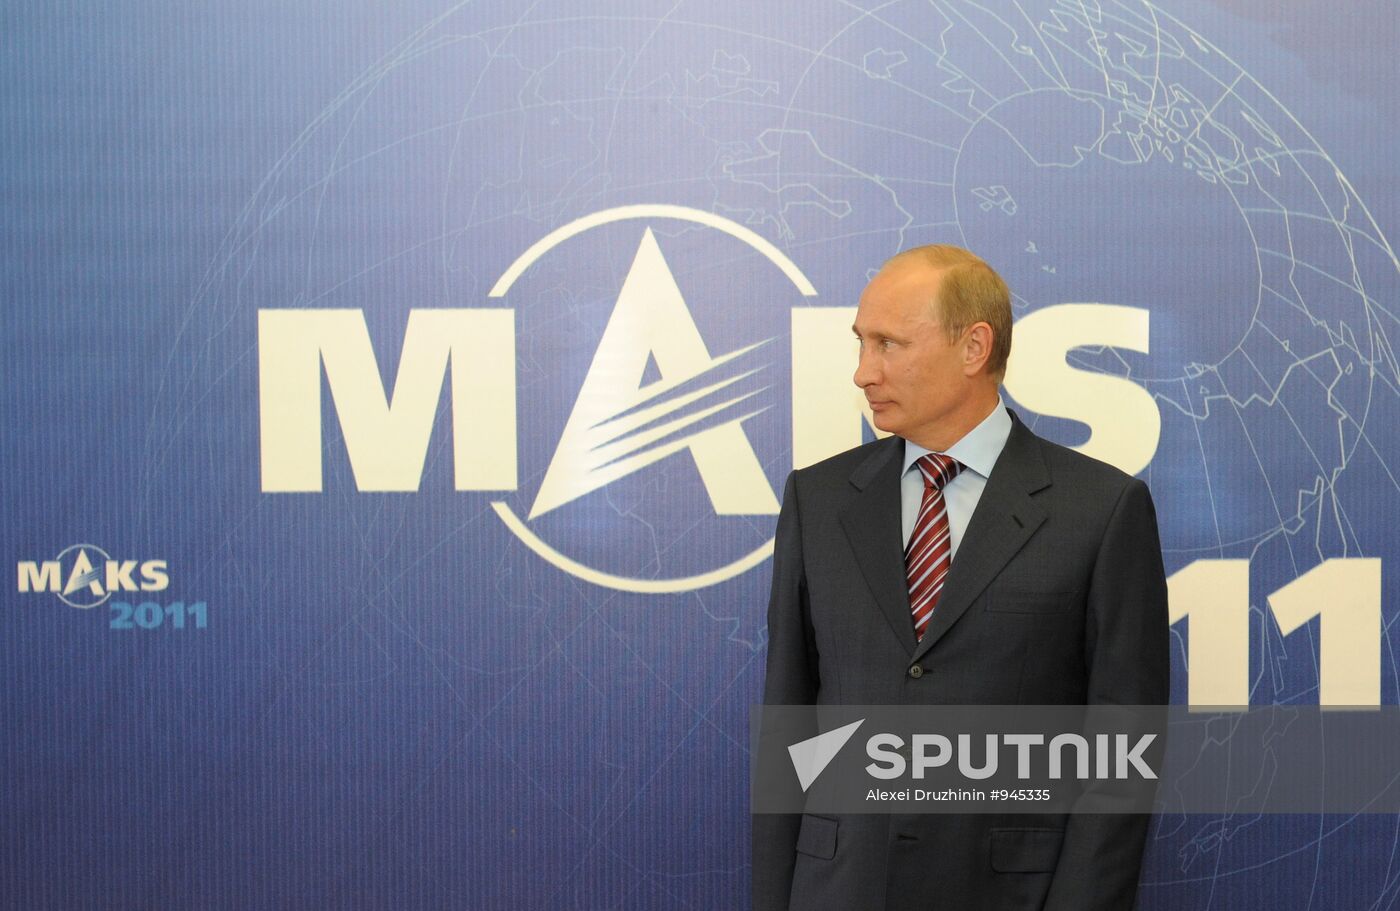 Vladimir Putin attends MAKS international air show